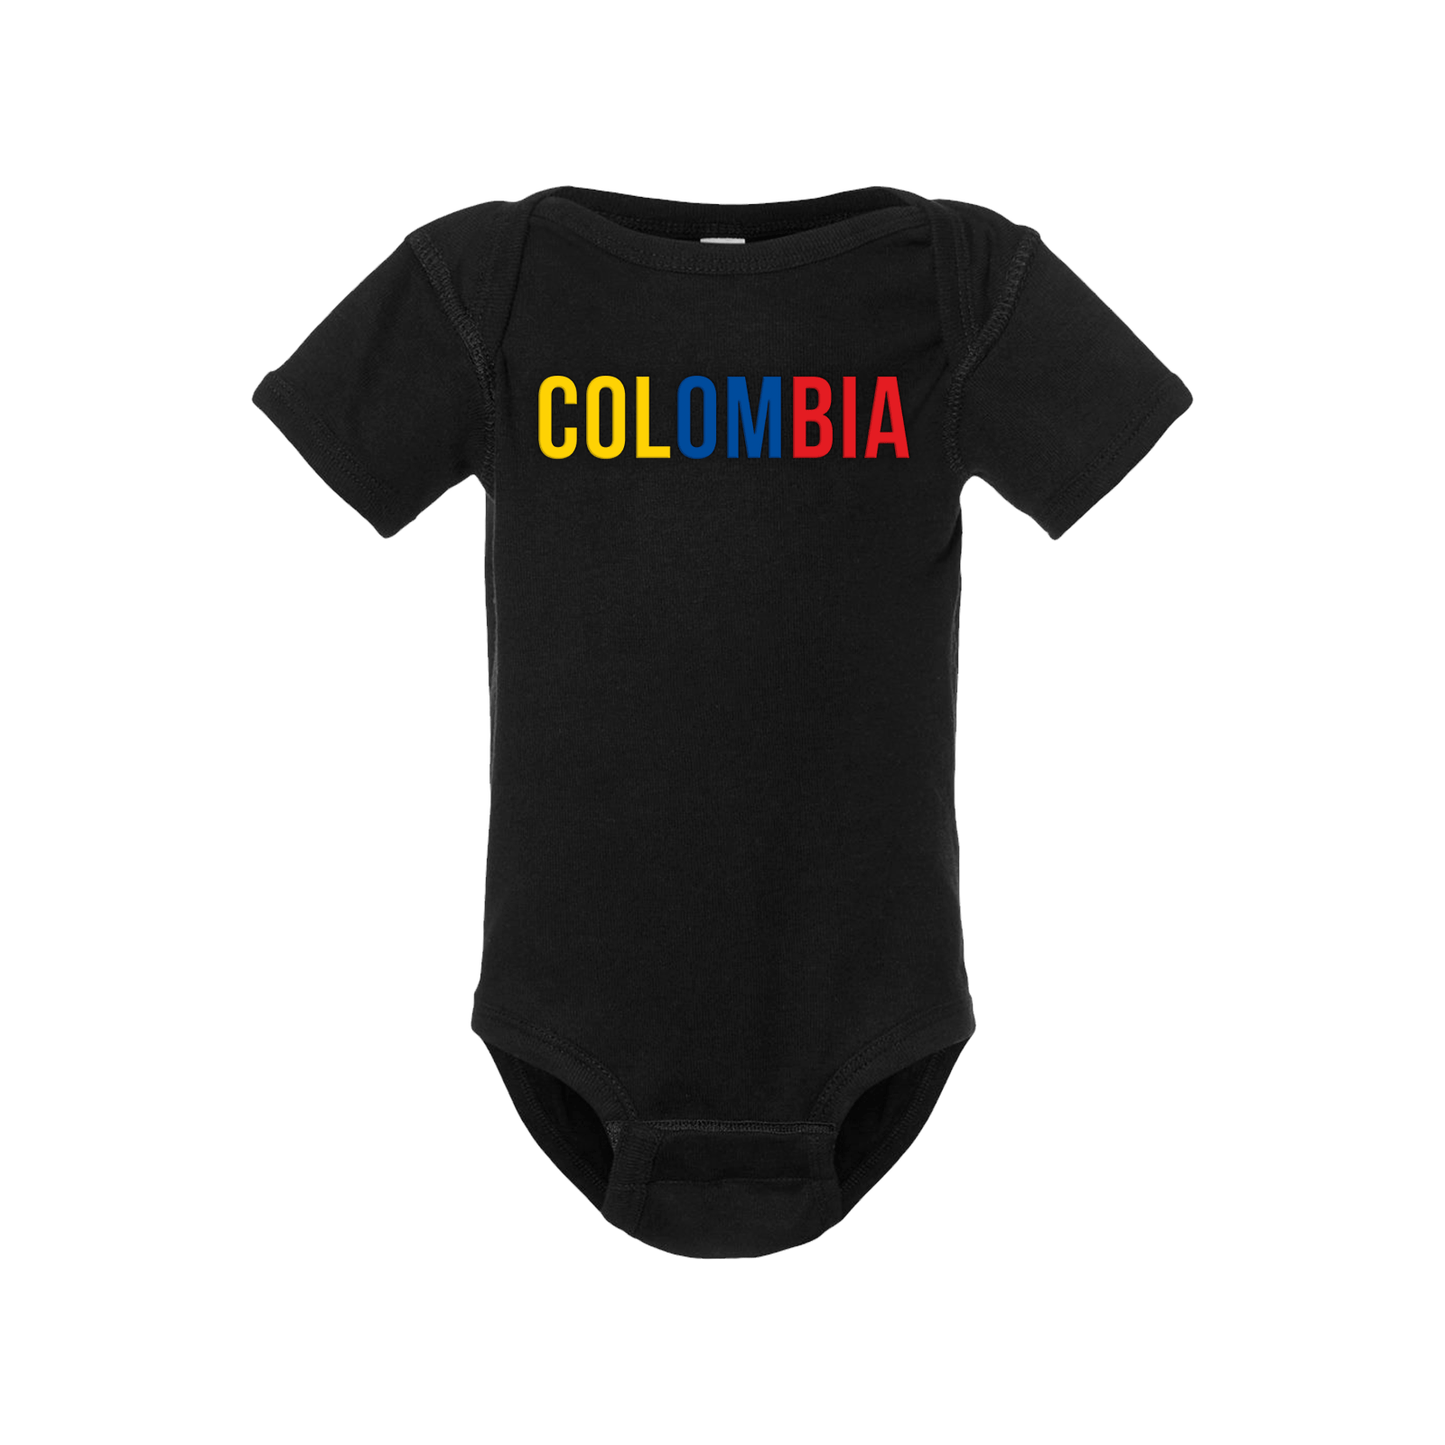 Colombia Short Sleeve Onesie - Babies & Toddlers